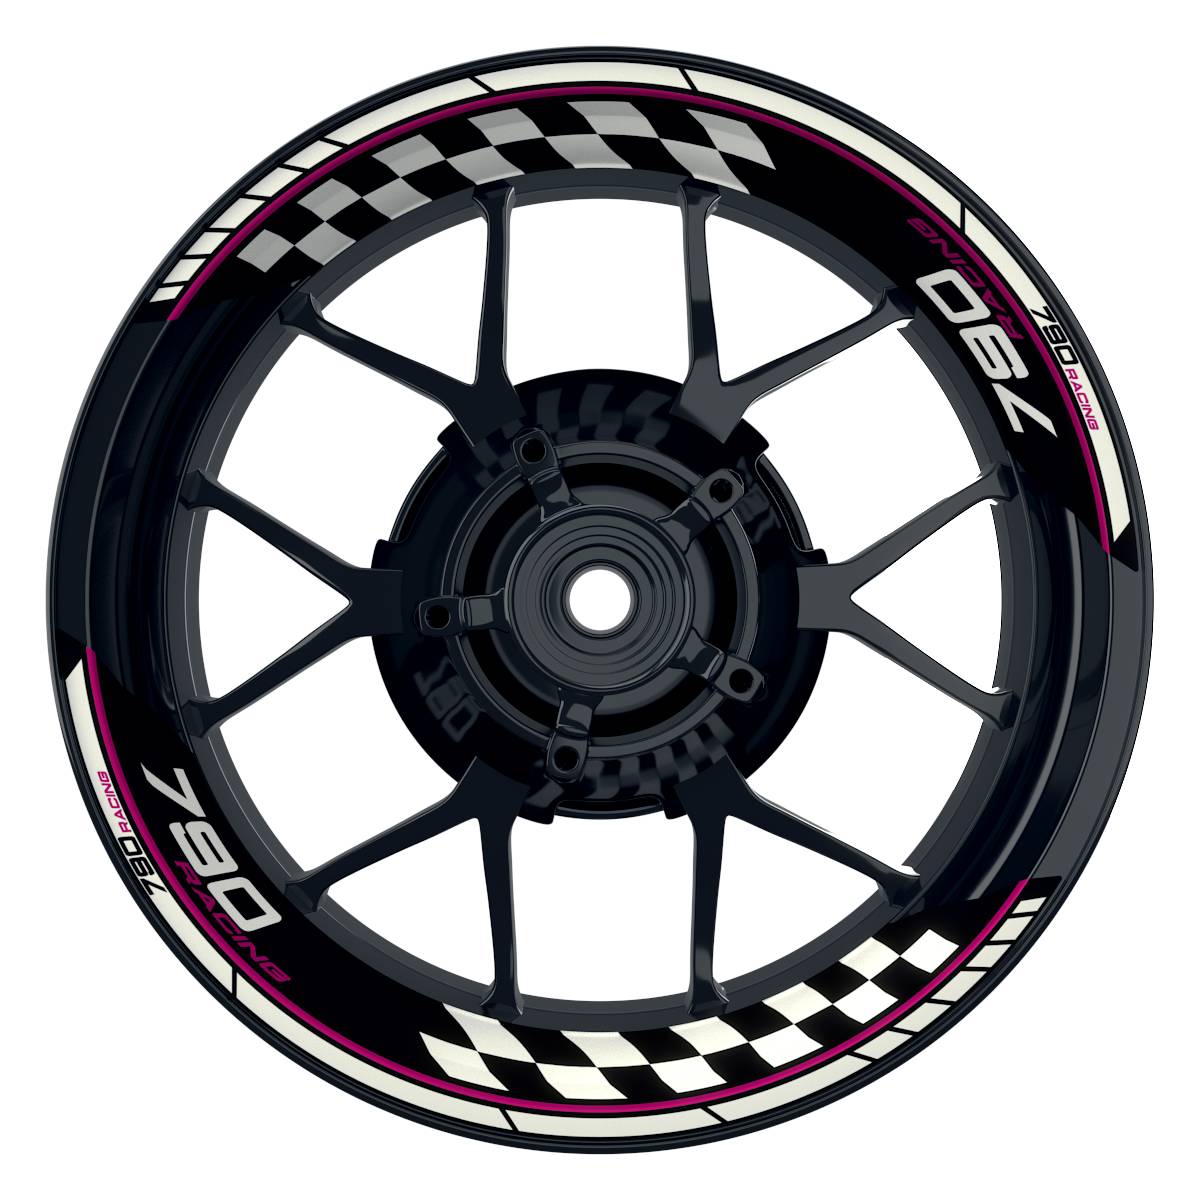 KTM Racing 790 Grid schwarz pink Frontansicht